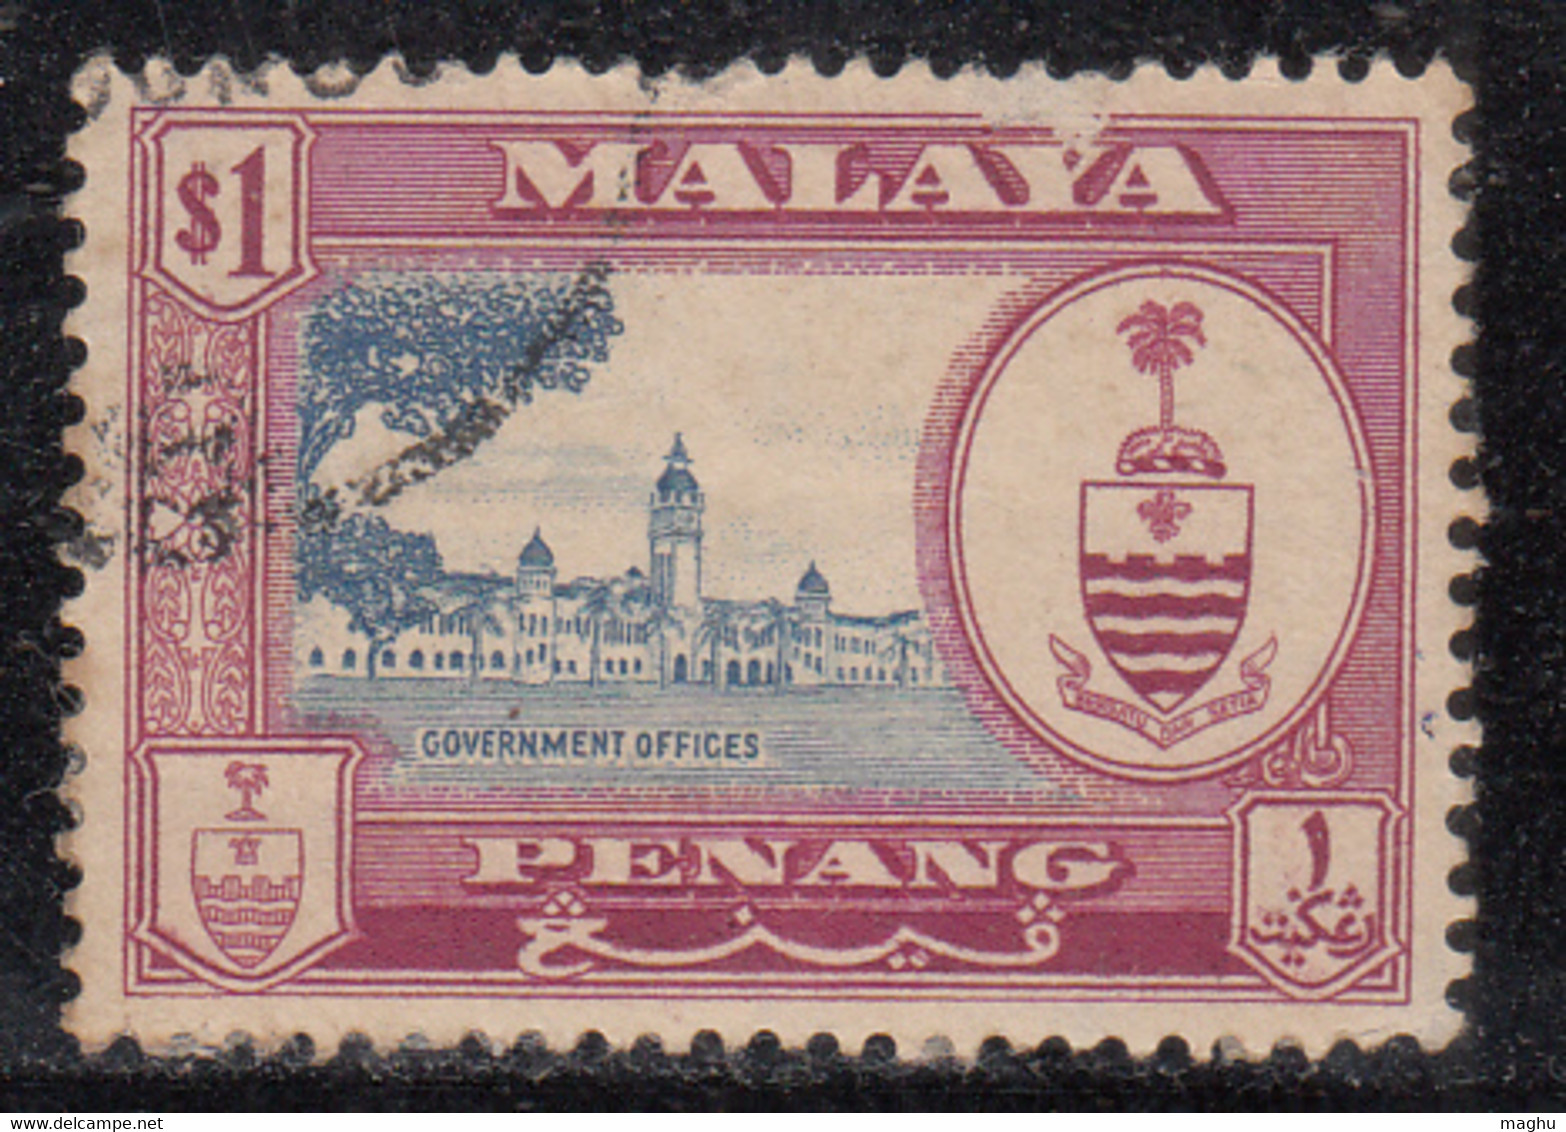 $1 Used Penang, Malaya, Malaysia Used 1960 - Penang